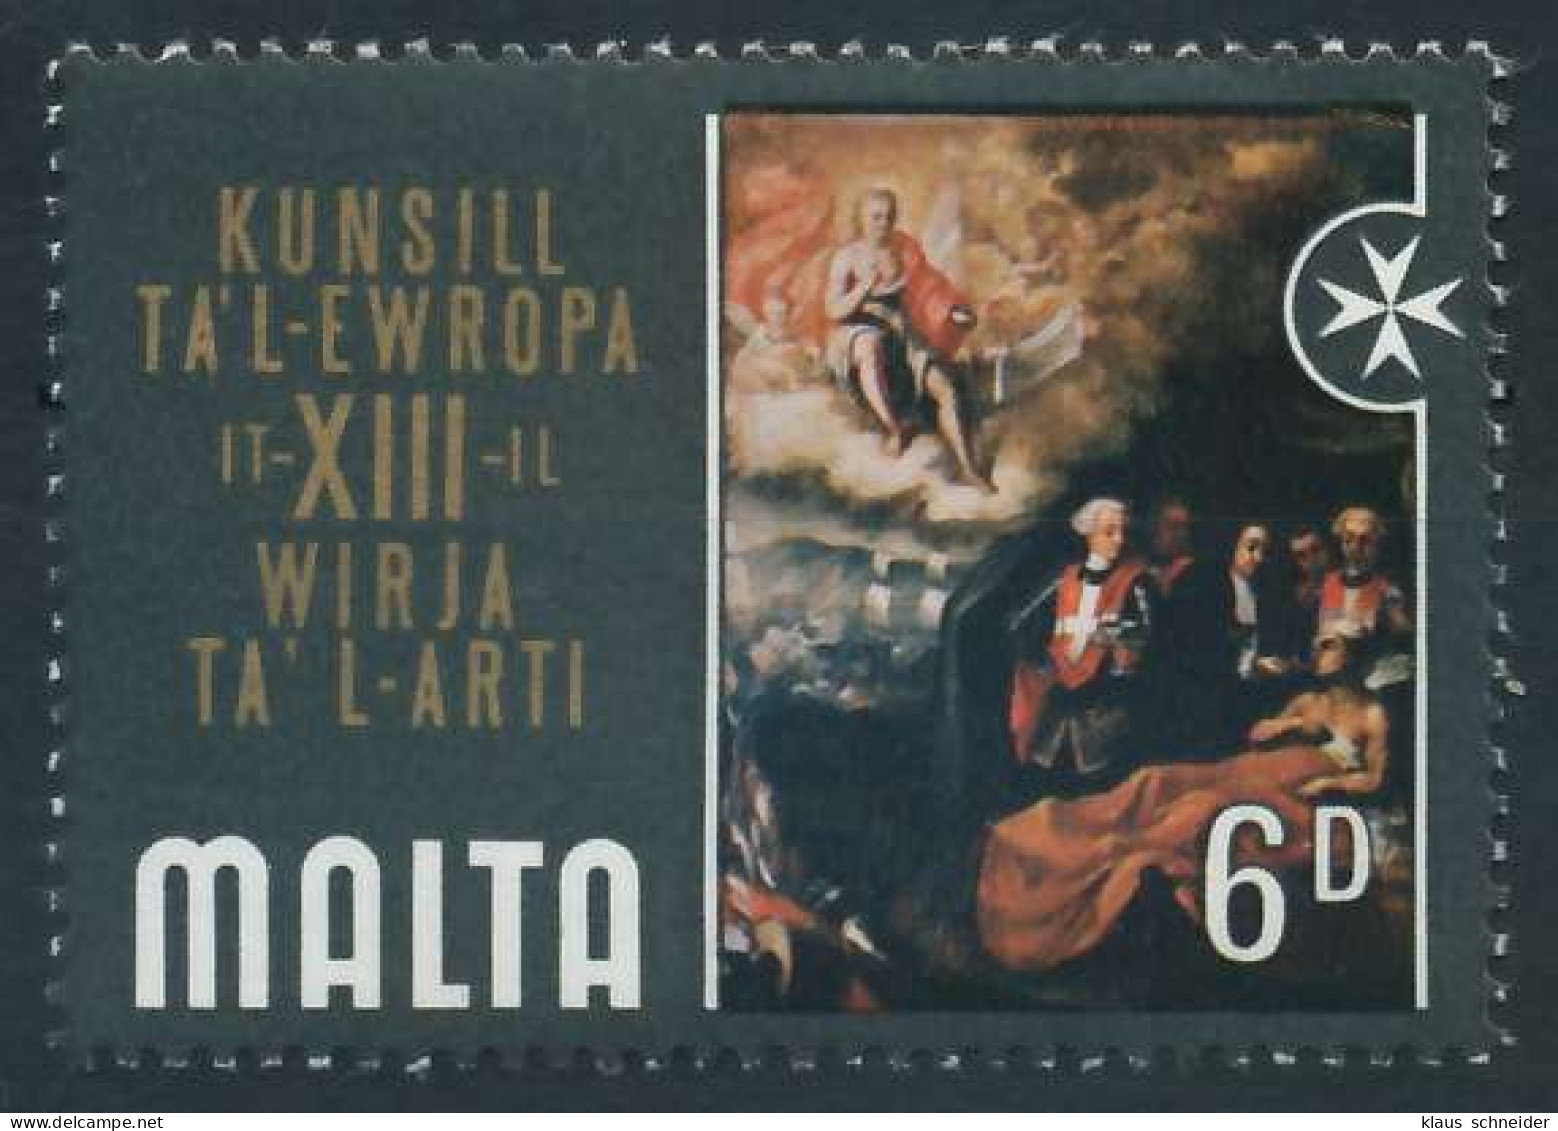 MALTA 1970 Nr 404 Postfrisch S216BD2 - Malta